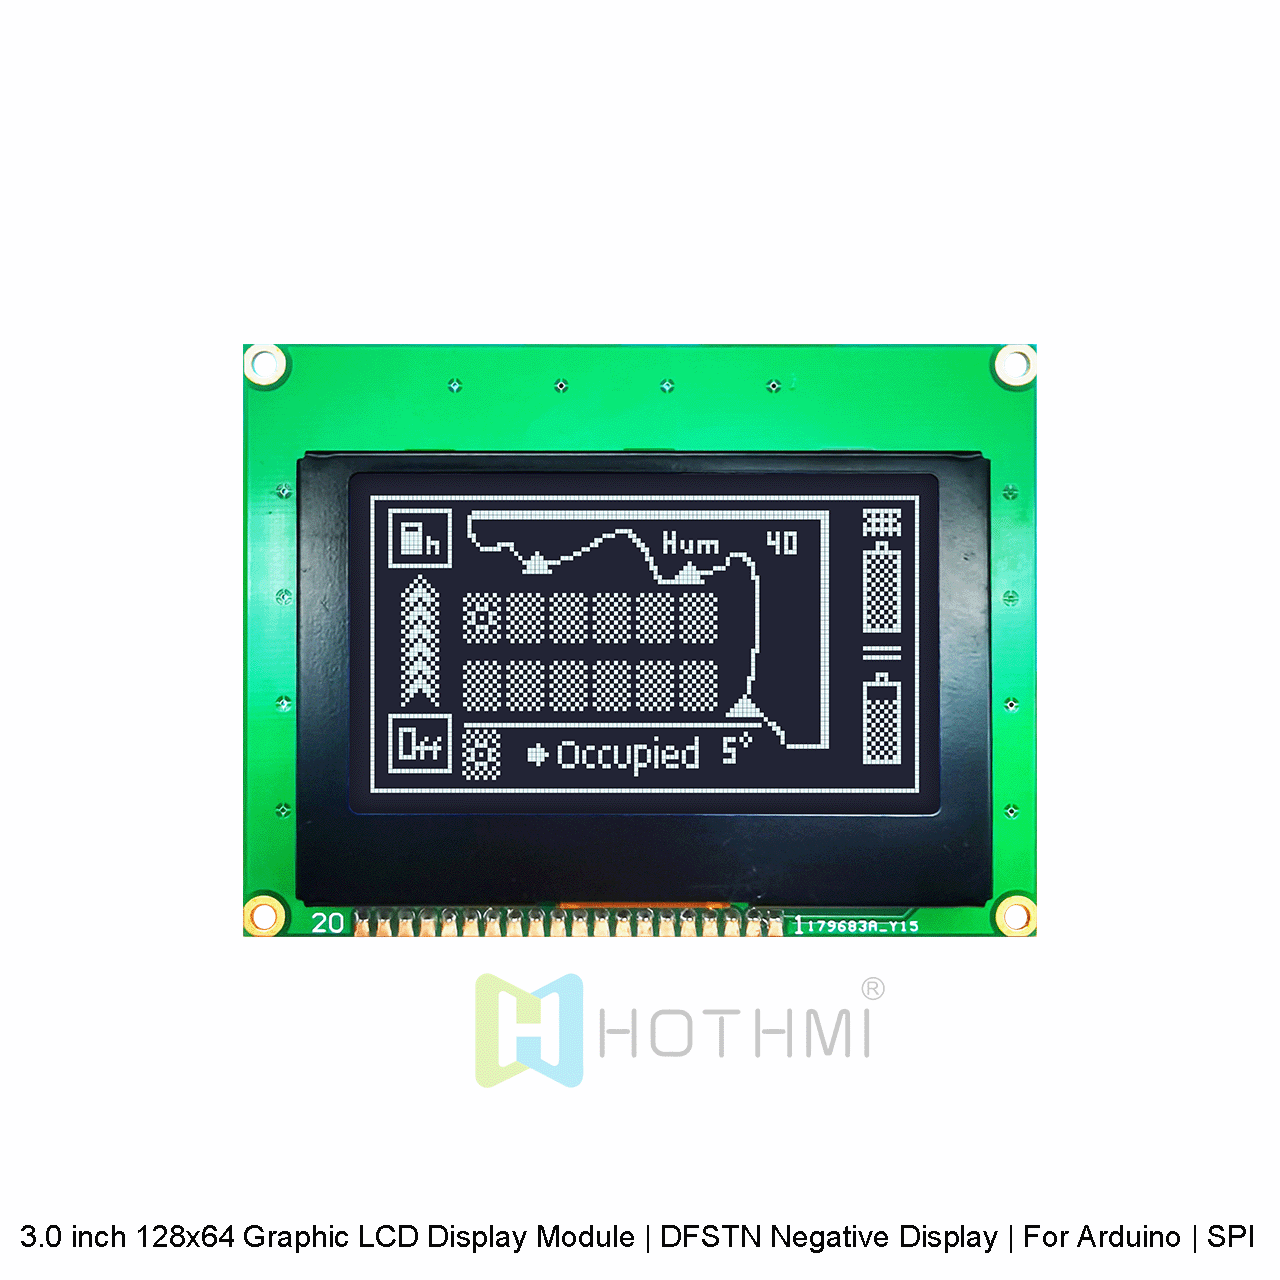 3.0 英寸 128x64 图形 LCD 显示模块 | DFSTN负显| 适用于 Arduino | SPI 接口 | 黑底白字图形LCD